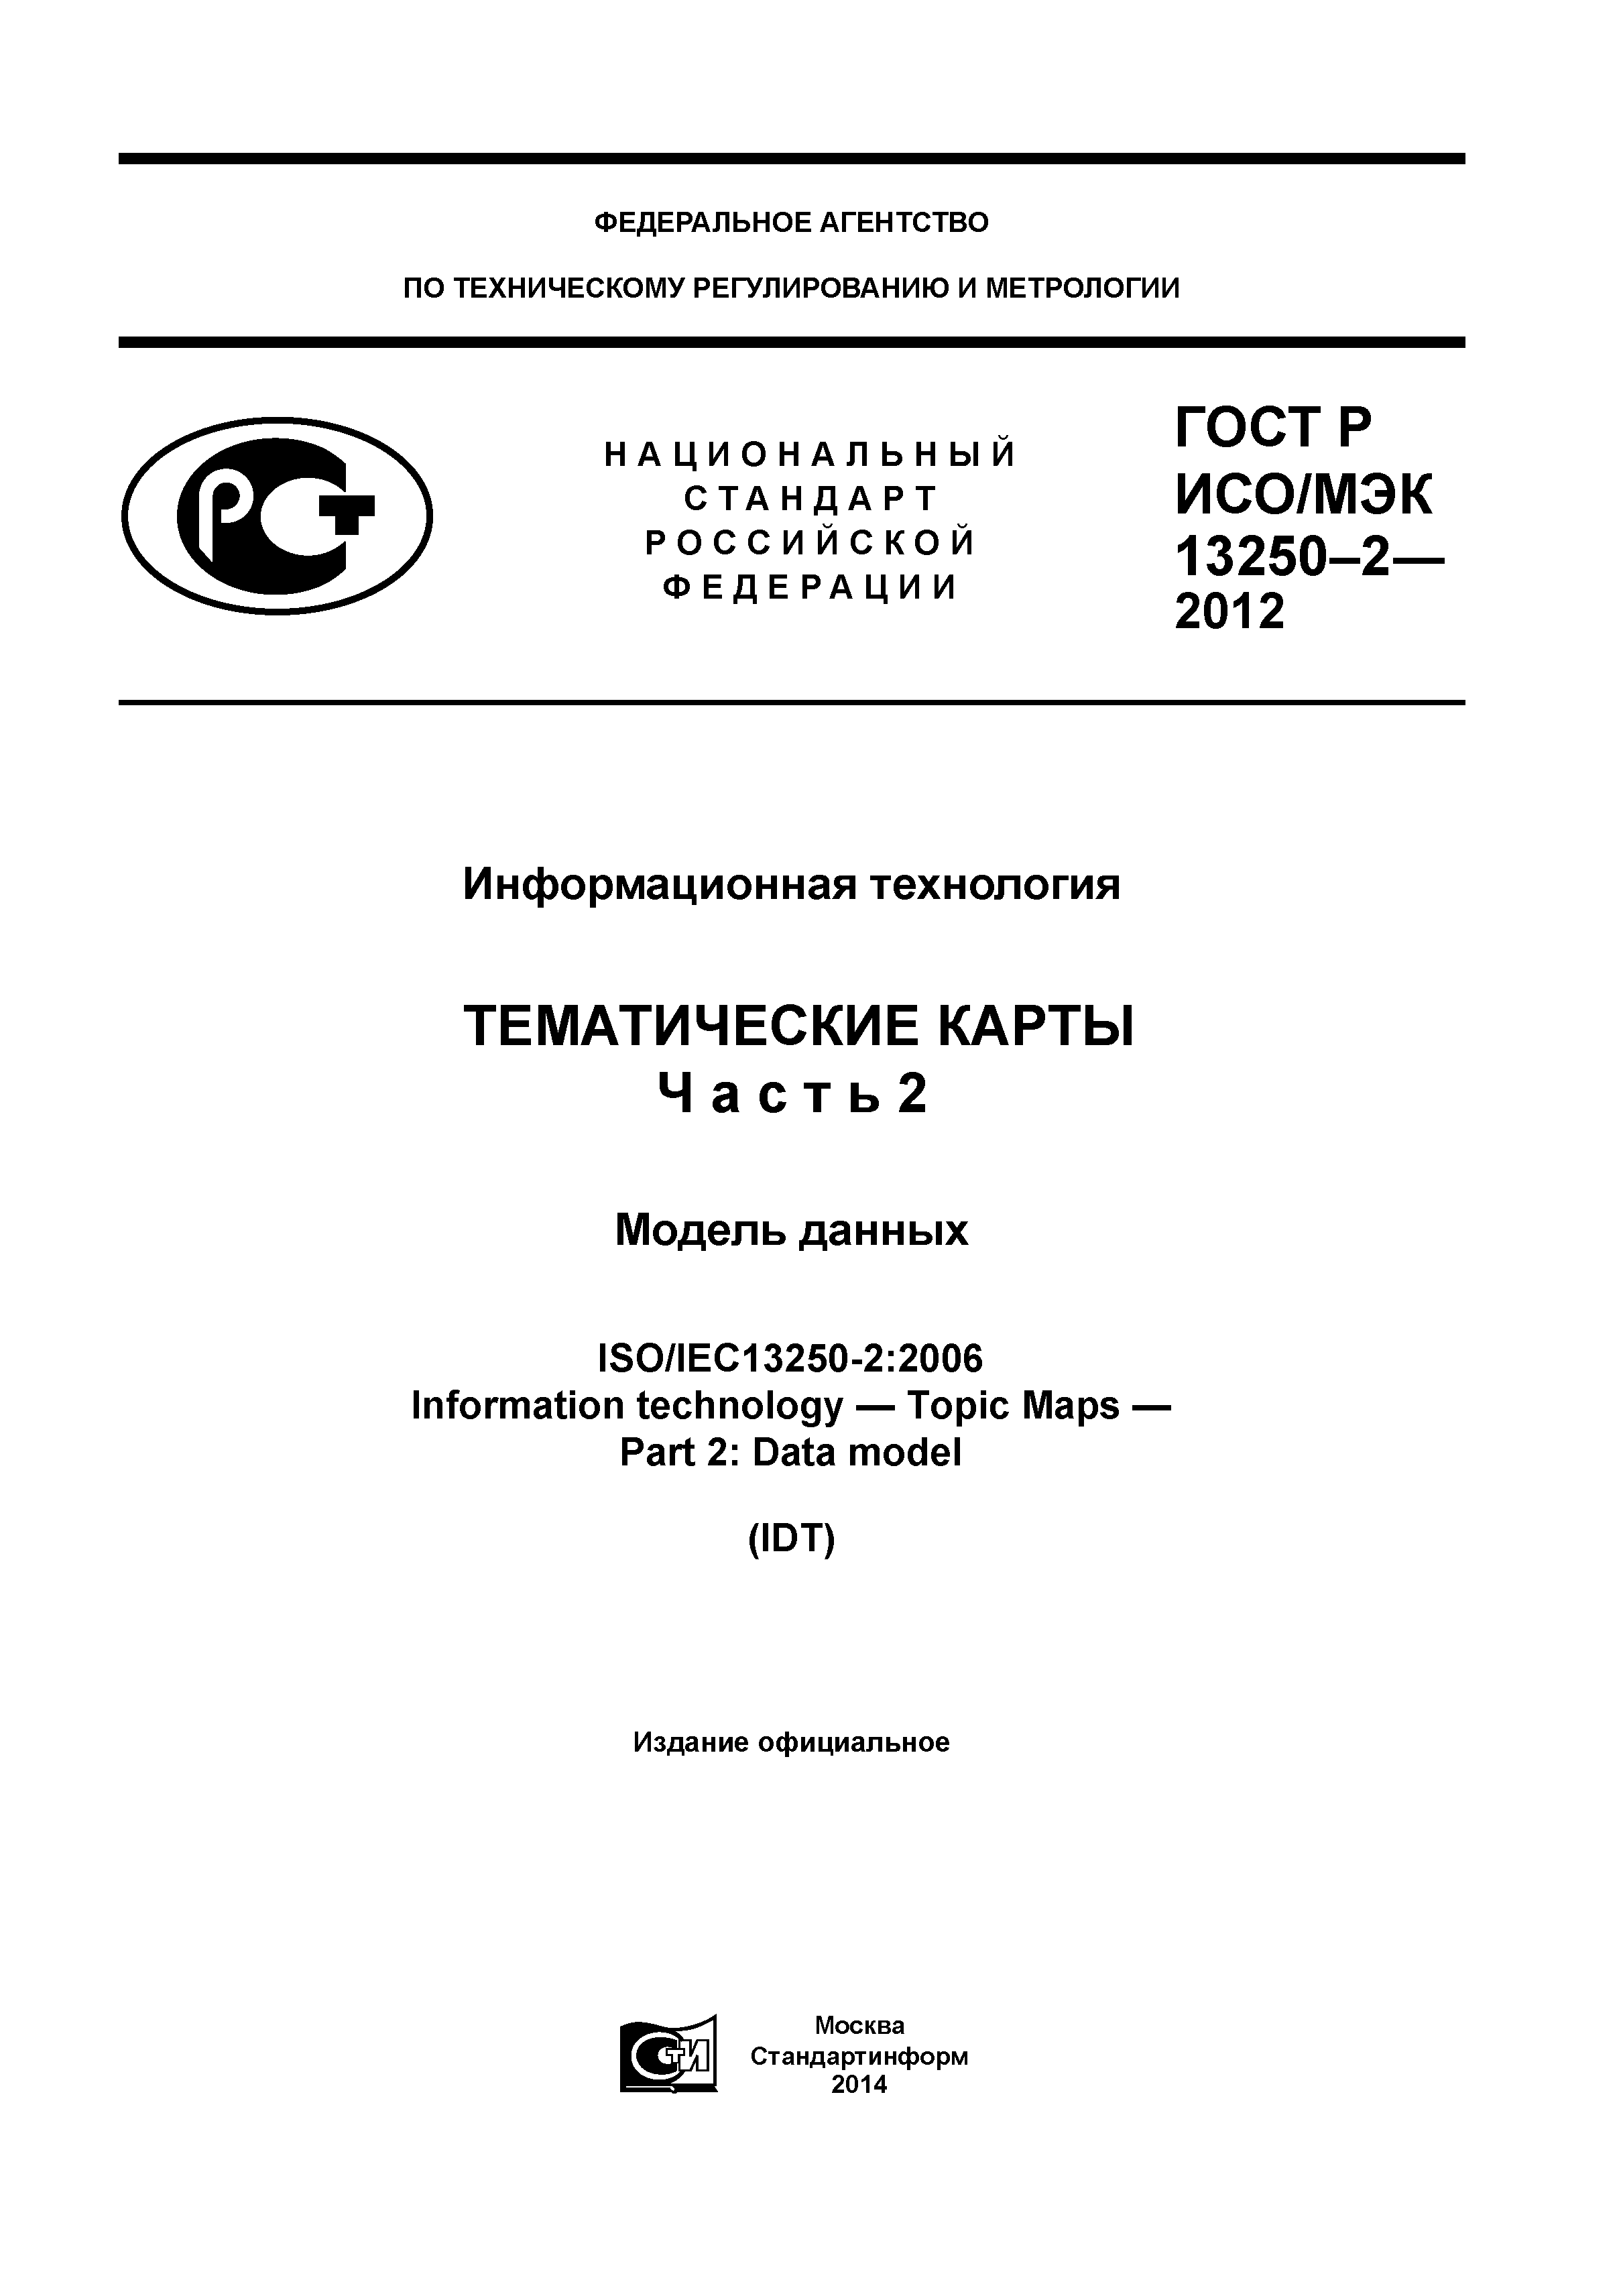 ГОСТ Р ИСО/МЭК 13250-2-2012